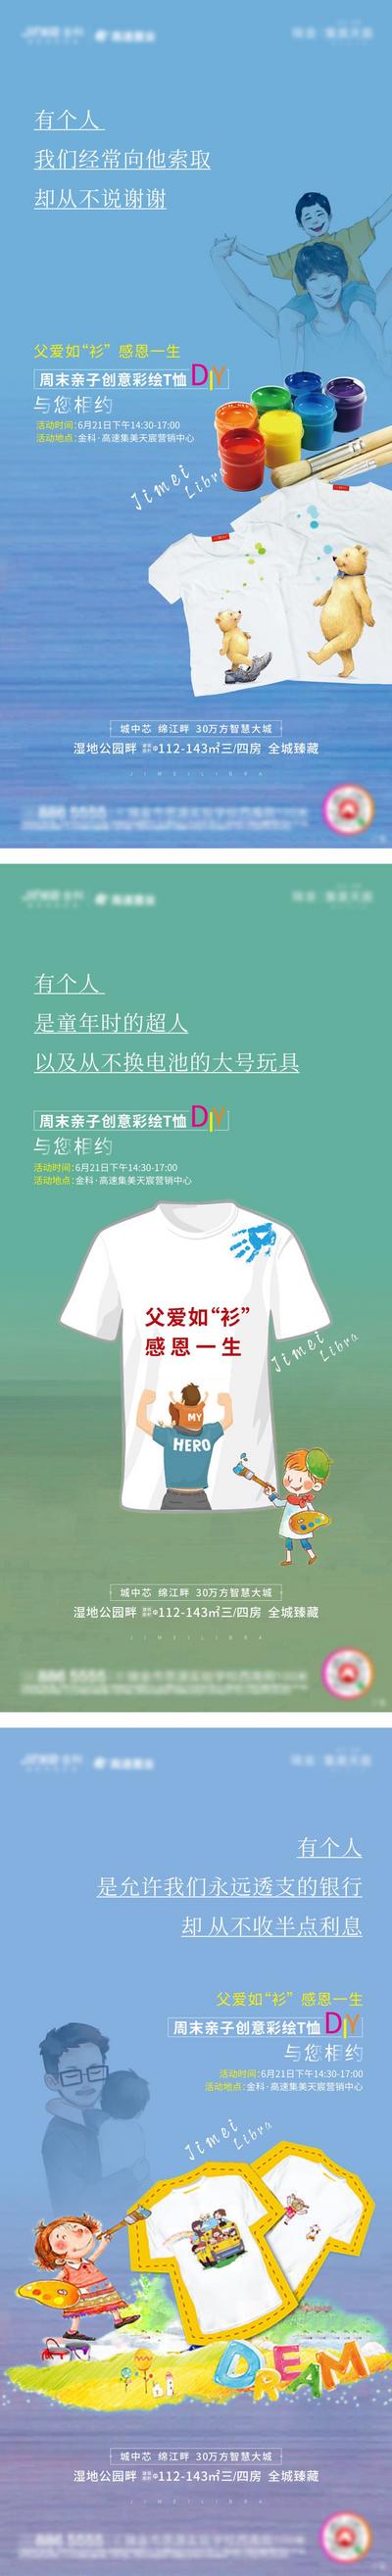 南门网 海报 房地产 父亲节 公历节日 暖场活动 手绘 彩绘 T恤 DIY 插画 卡通